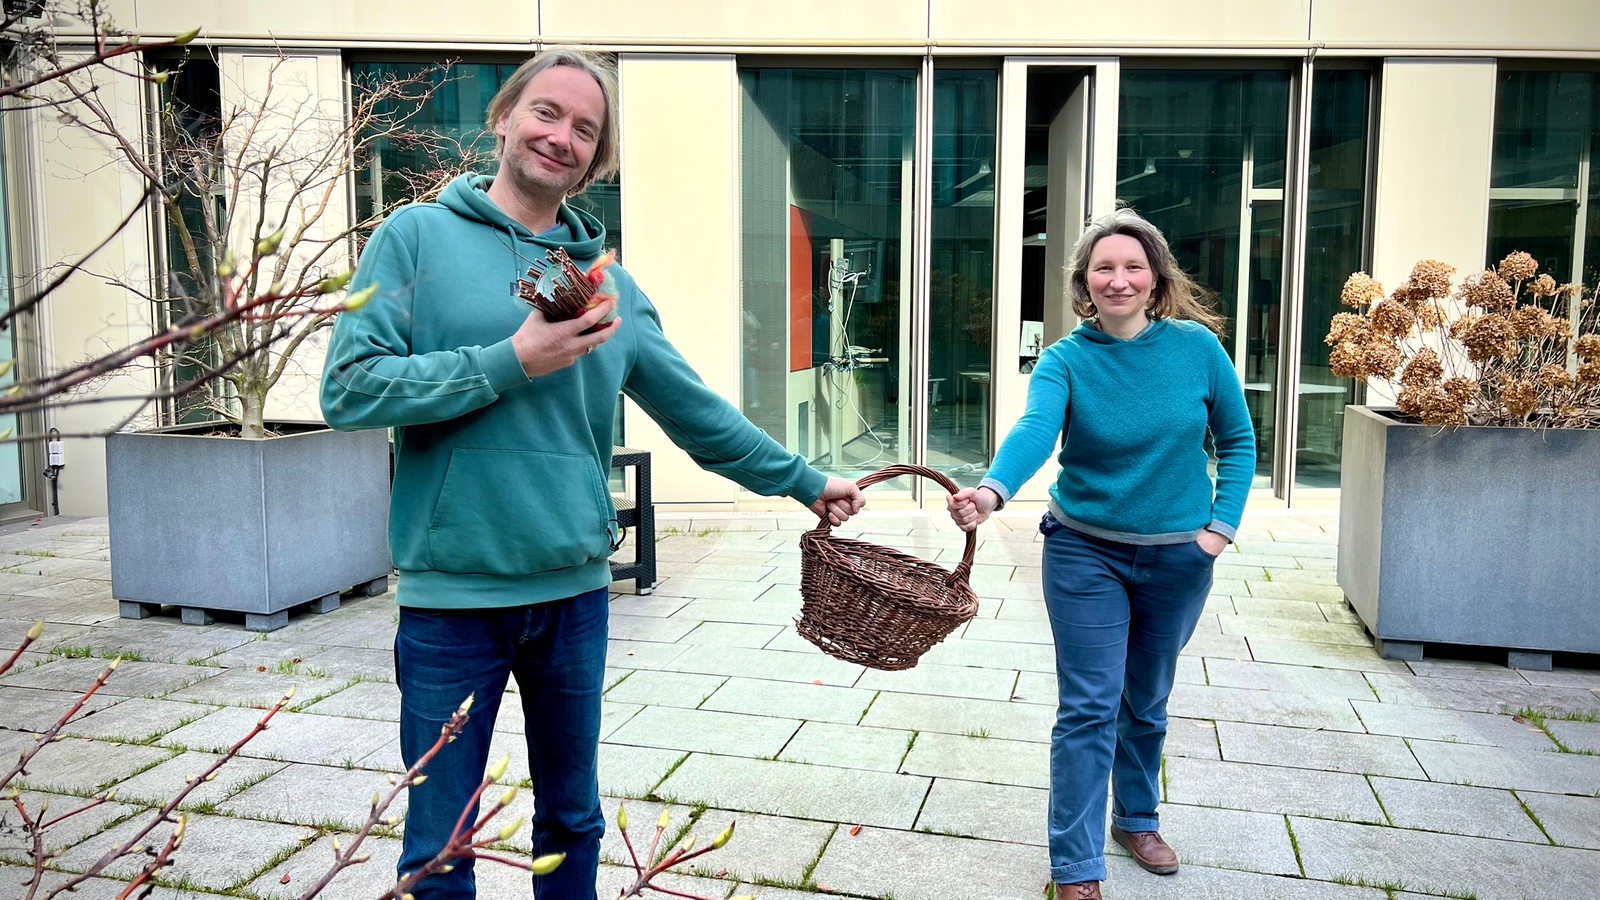 Ansgar Langhorst und Melanie Öhlenbach halten einen Weidenkorb und Dekoratives aus Weiden in die Kamera.